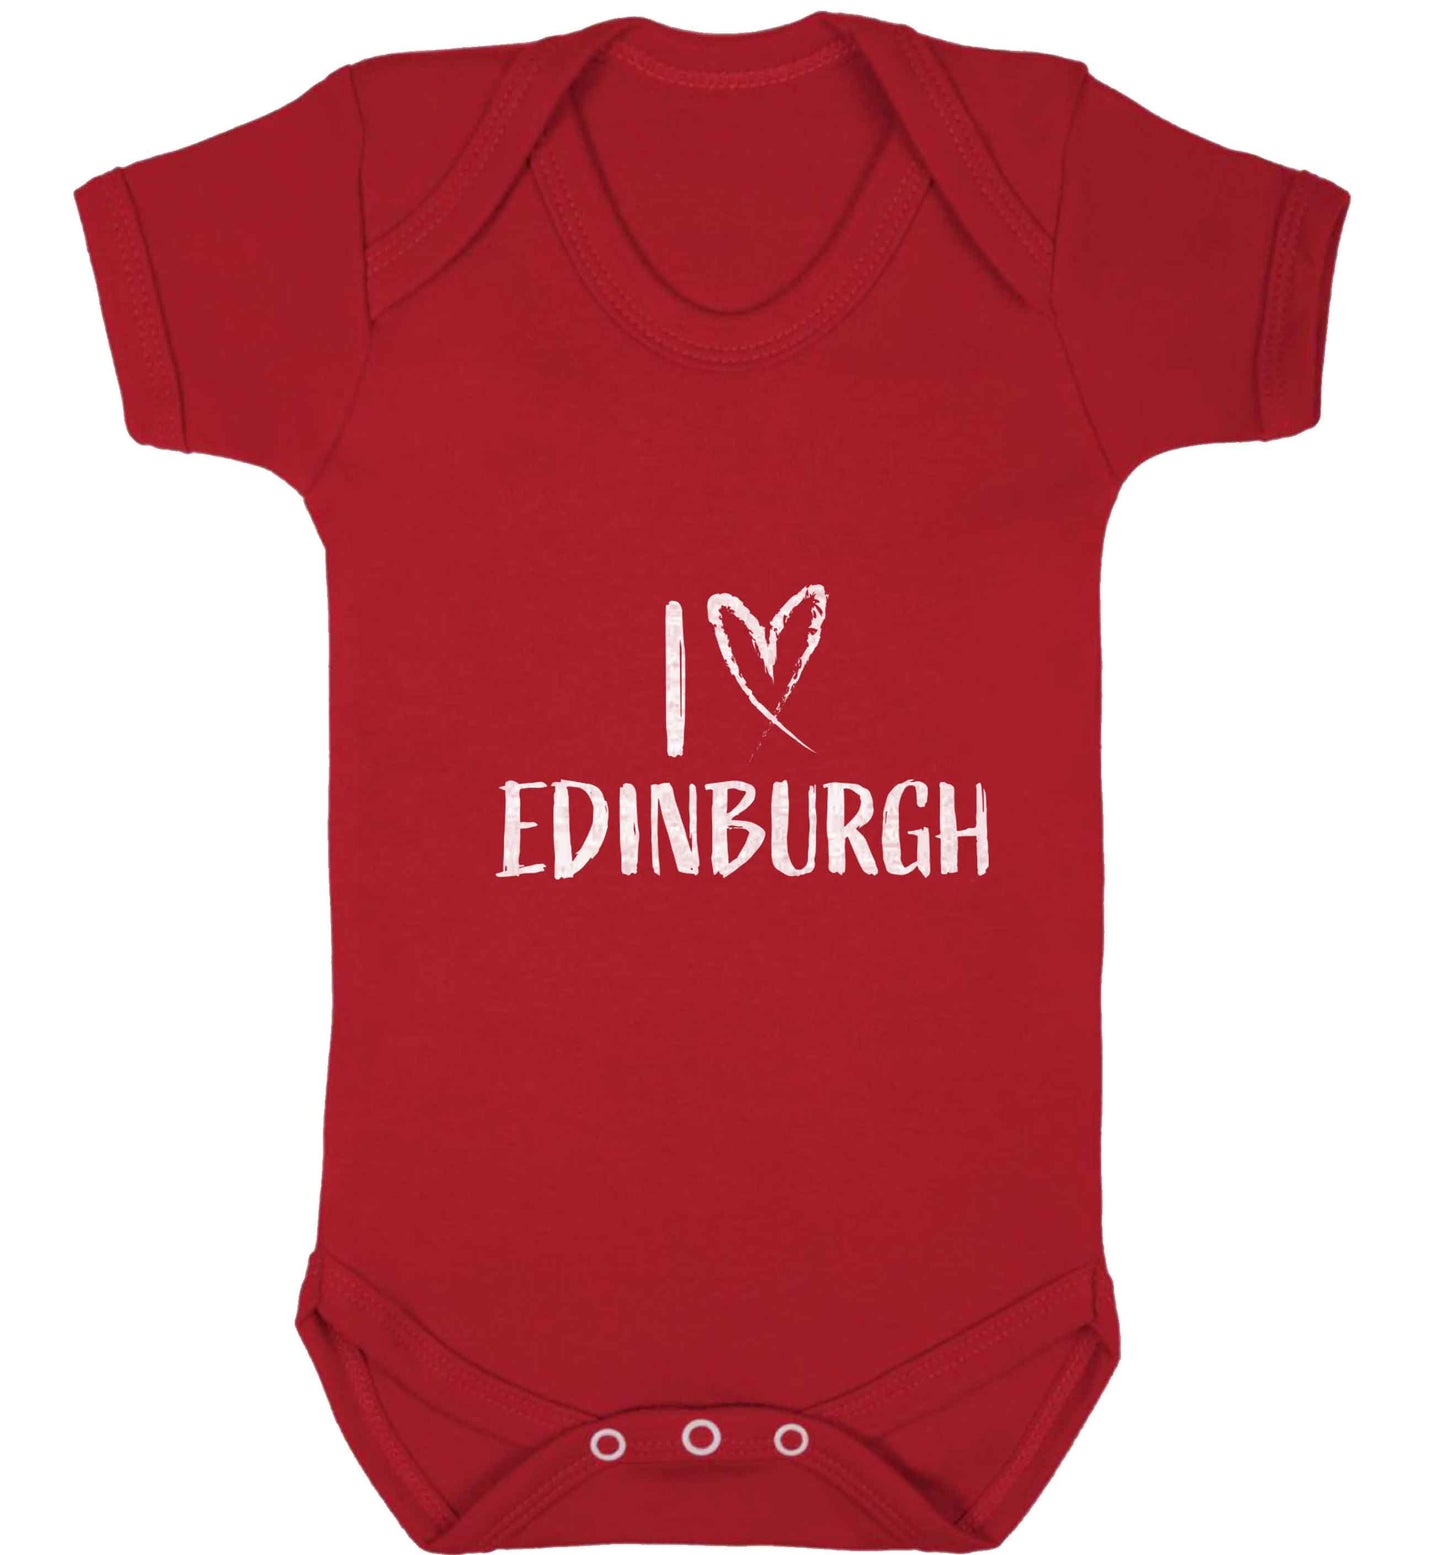 I love Edinburgh baby vest red 18-24 months